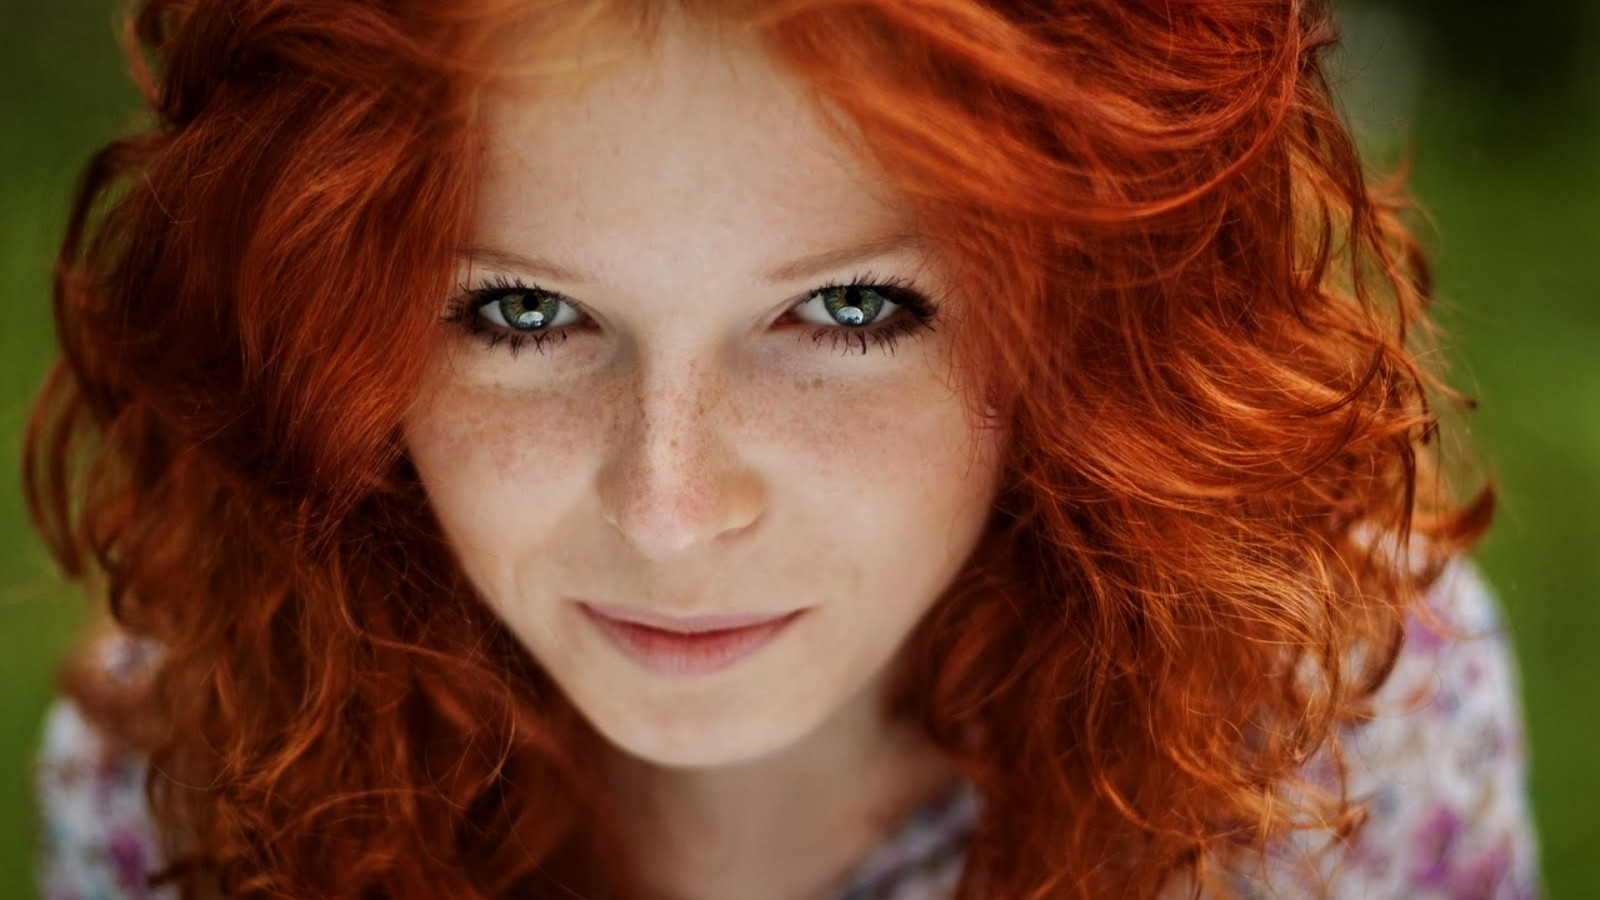 Bạn đang trông chờ tìm kiếm một kiểu tóc đỏ đầy sức sống? Hãy truy cập vào hình ảnh liên quan đến từ khóa này để khám phá những kiểu tóc đỏ lạ mắt và đầy cá tính cho những cô nàng thích sự mới mẻ.